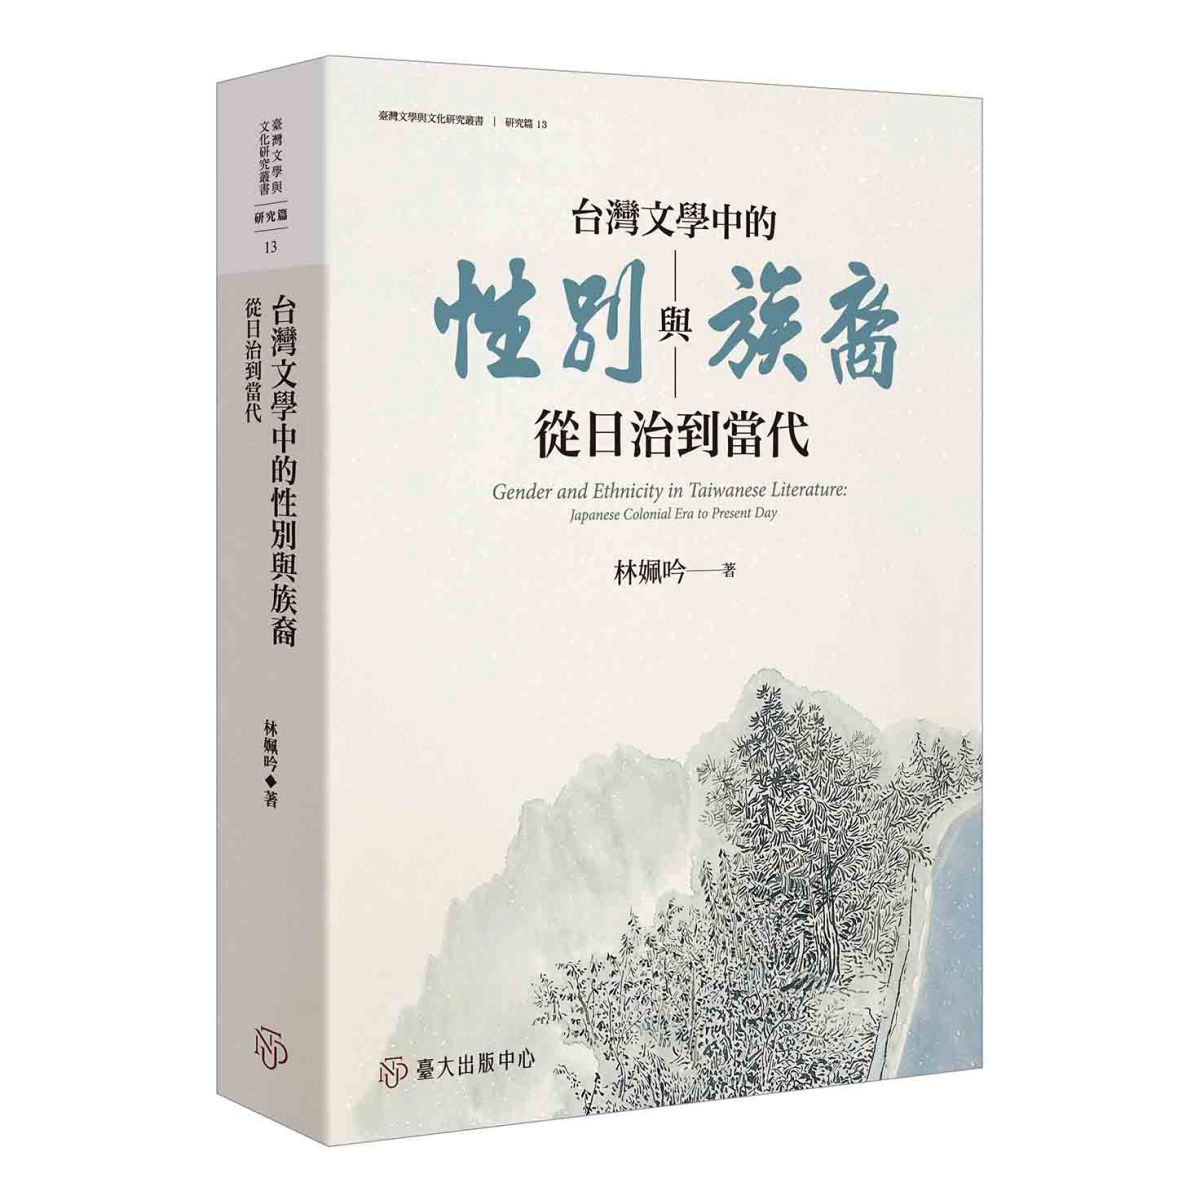 《台灣文學中的性別與族裔》探勘日治到當代的台灣文學之女性角色和族裔書寫